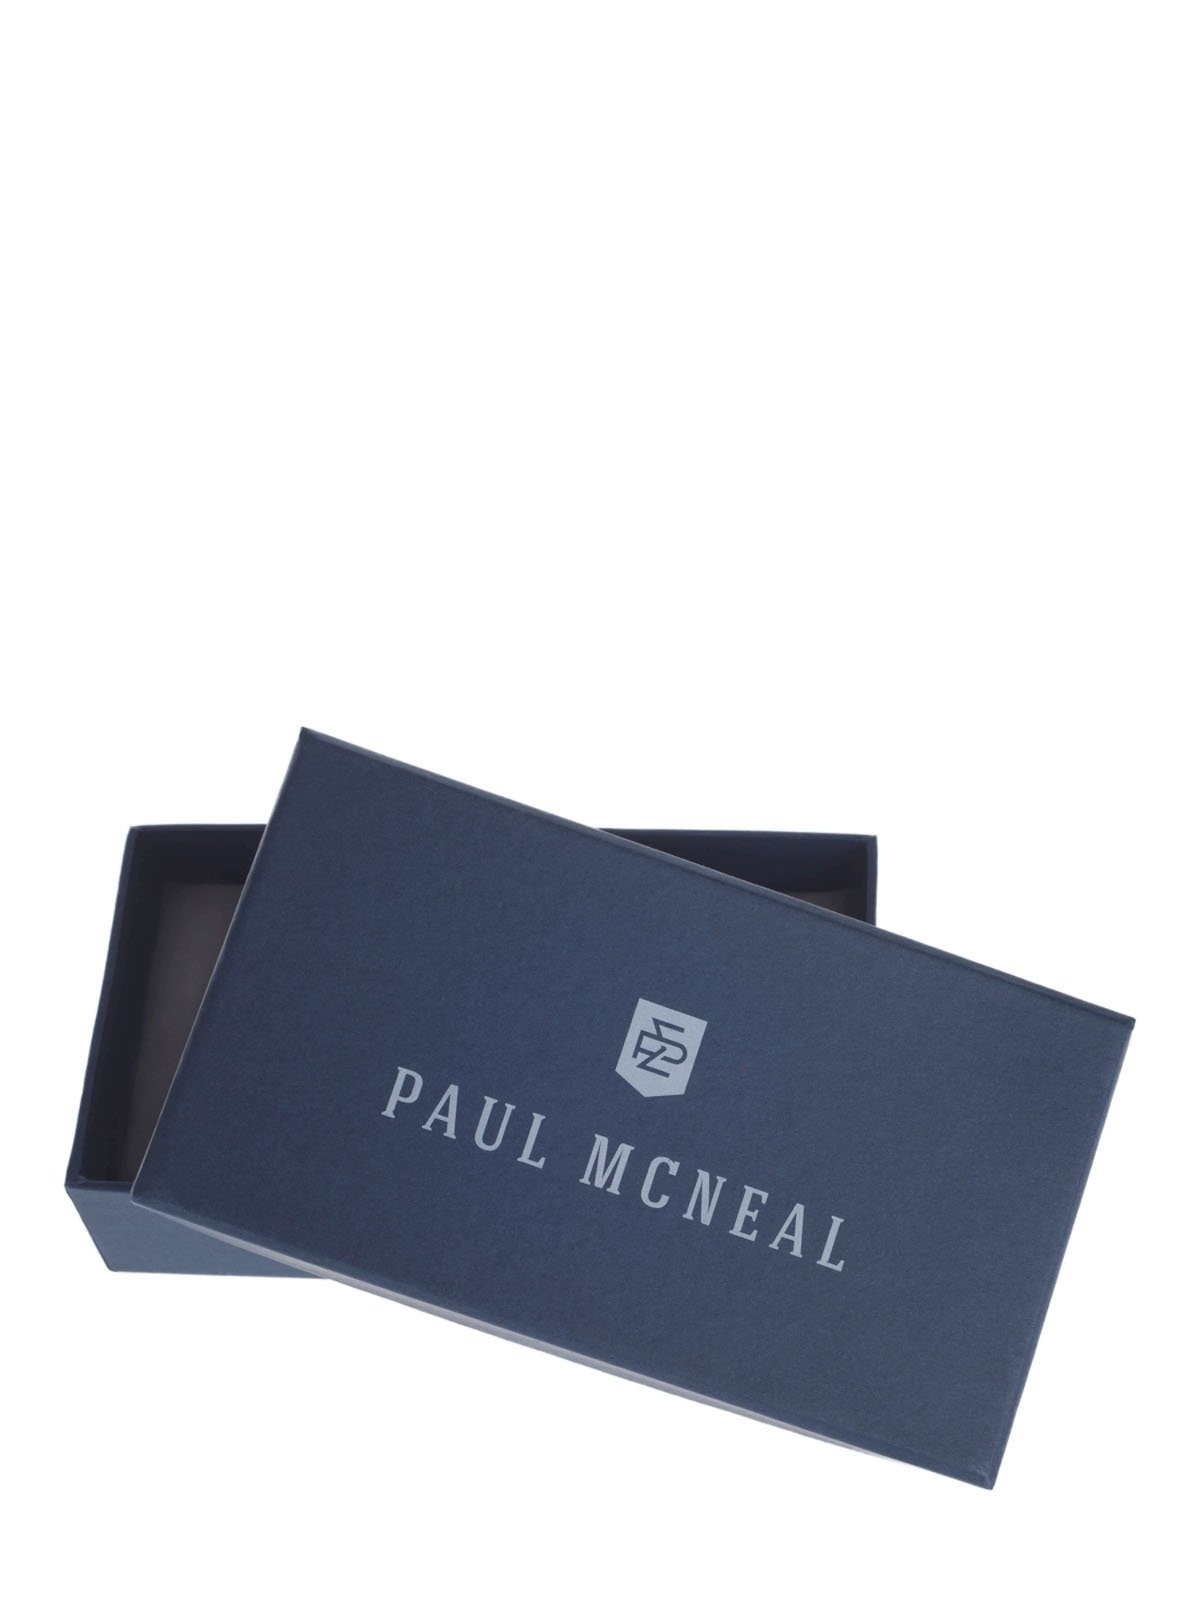 PAUL MCNEAL